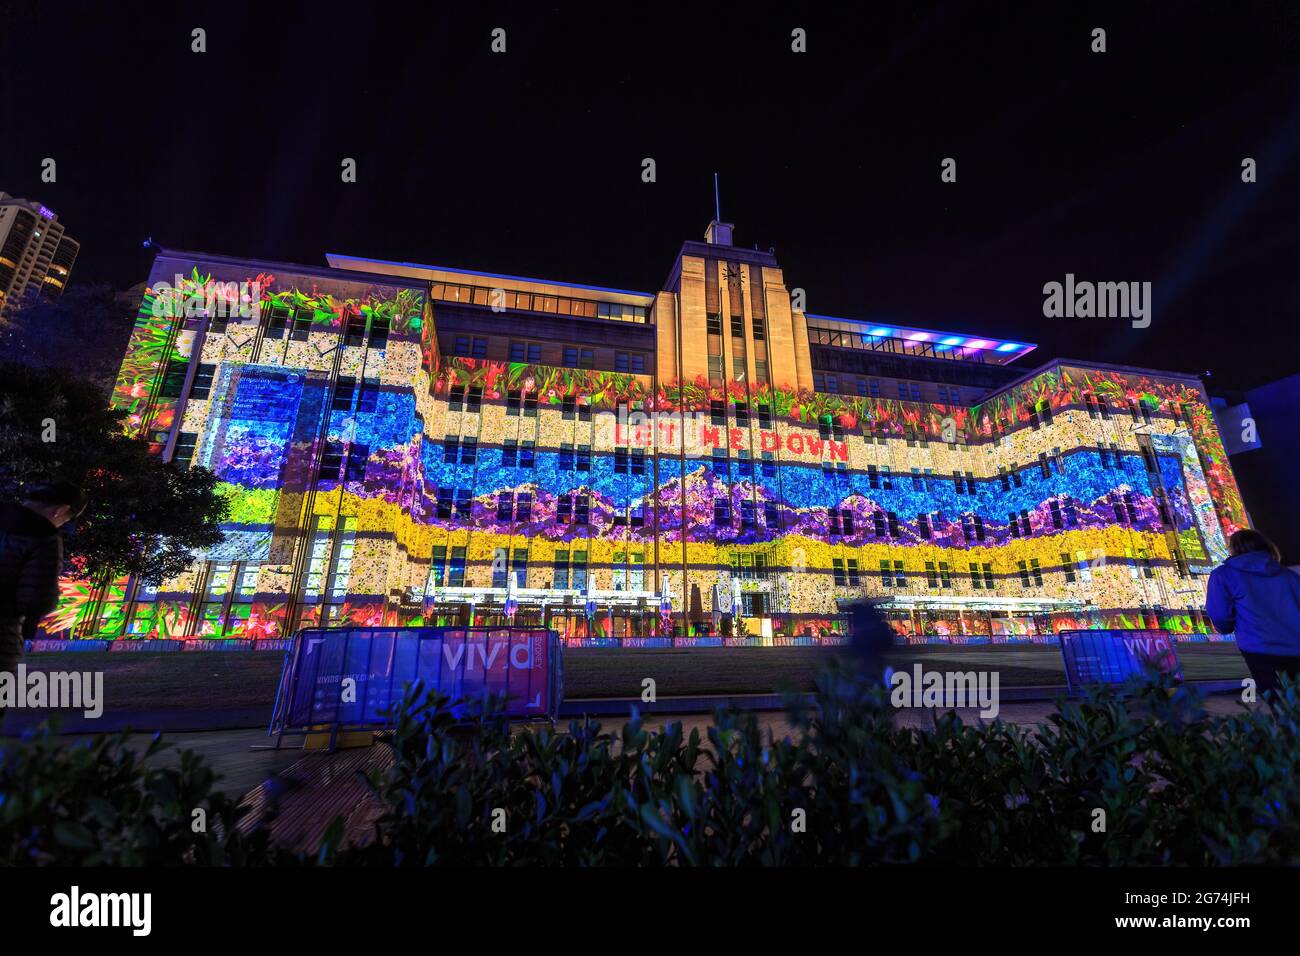 Il Museo d'Arte Contemporanea di Sydney, Australia, si è illuminato con colori vivaci durante il festival della città "Vivid Sydney" Foto Stock